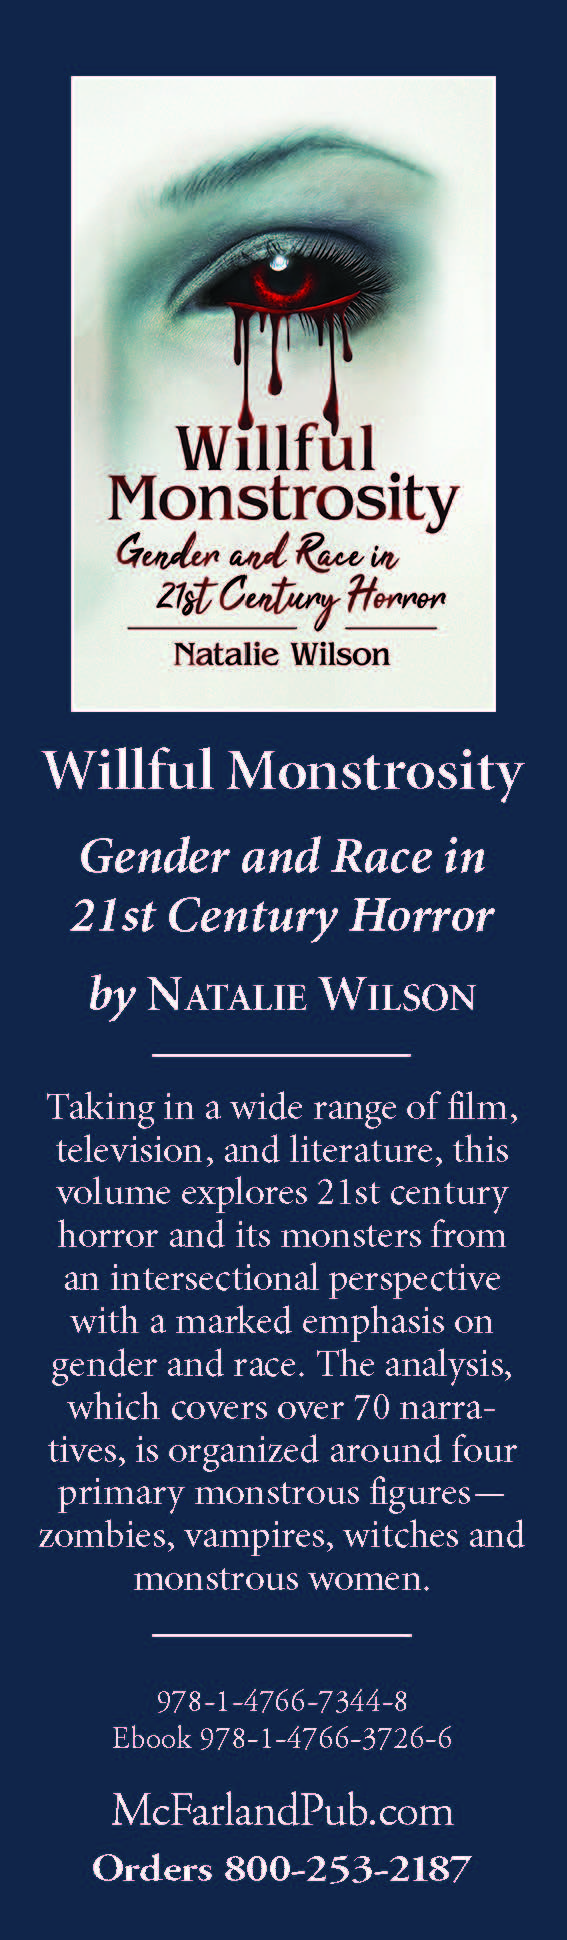 willful monstrosity book mark